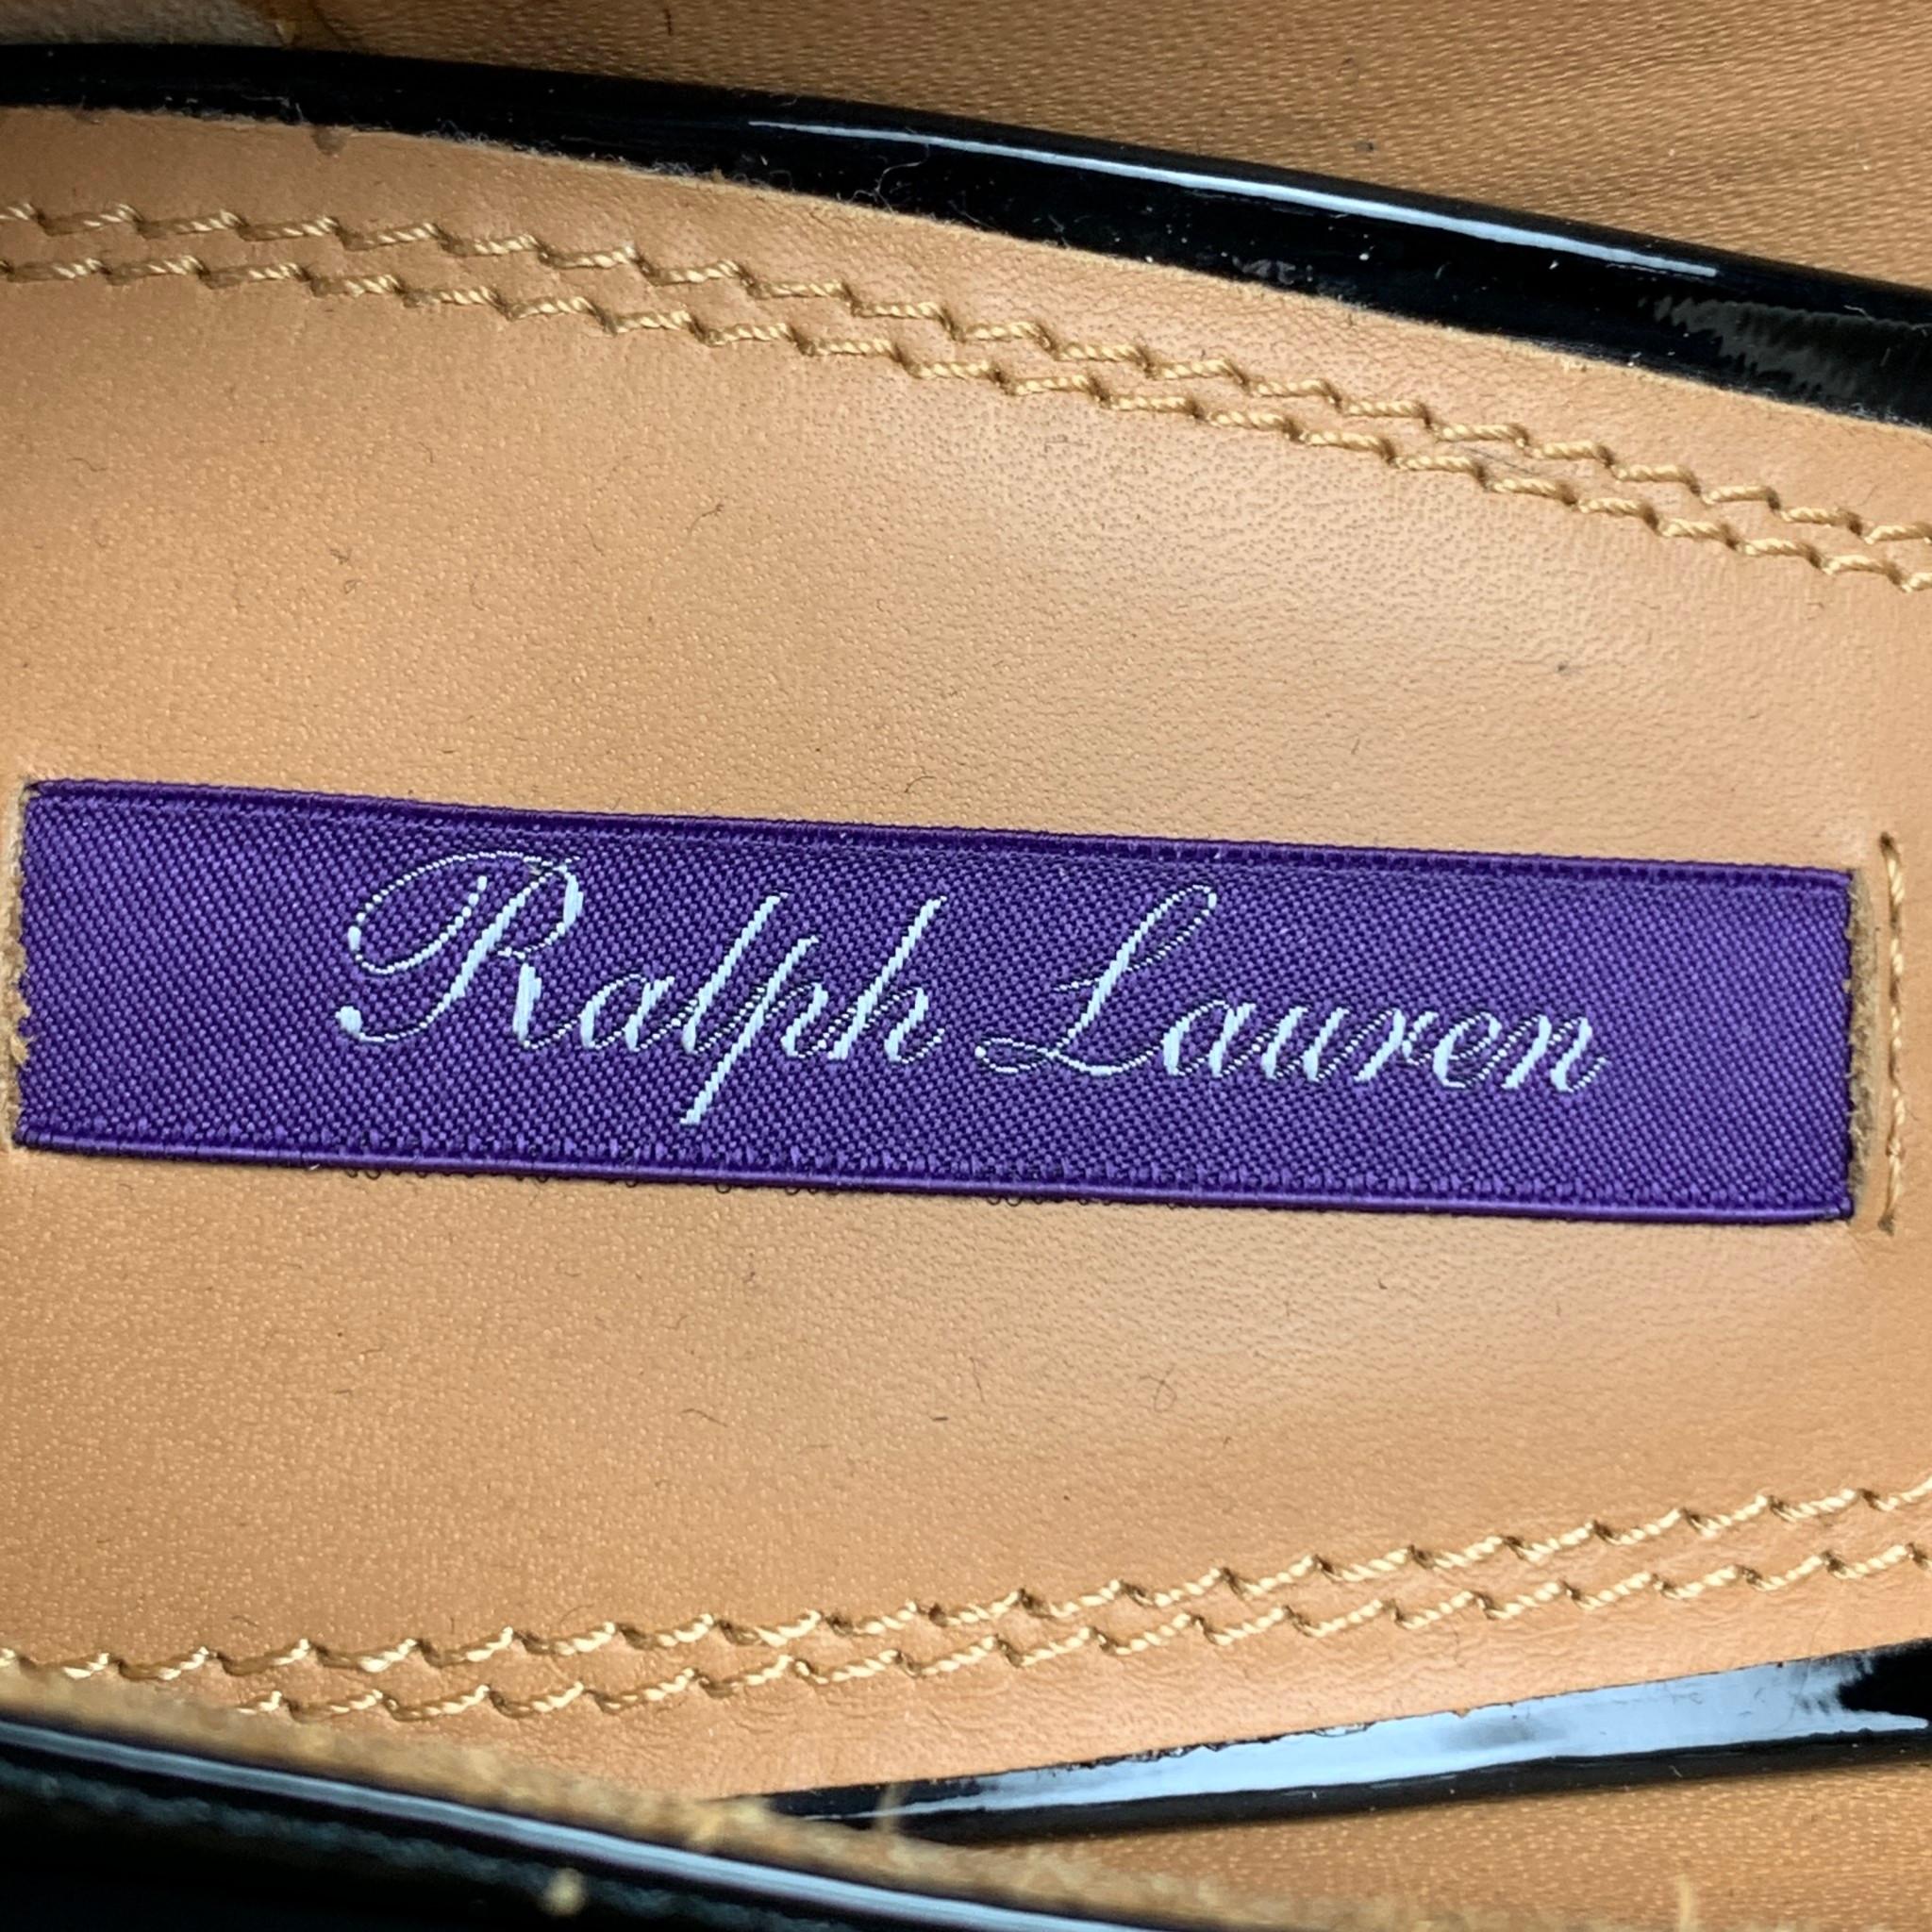 RALPH LAUREN Size 9.5 Black Leather Patent Leather Stiletto Celia Pumps 1